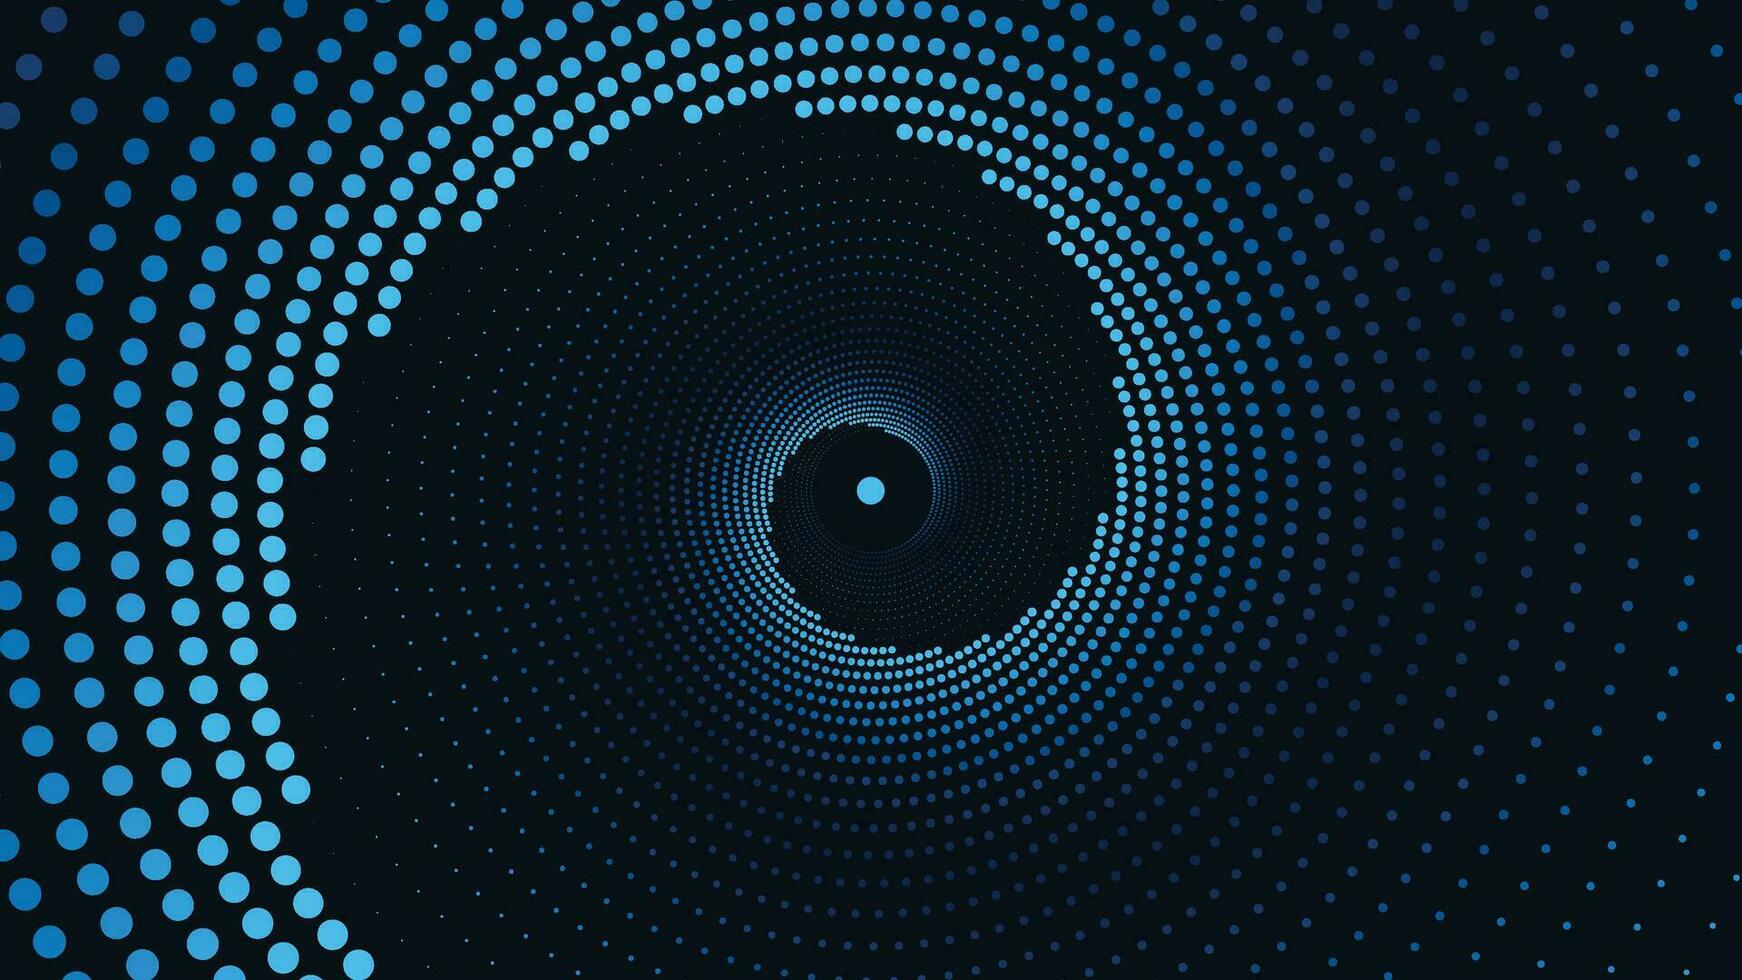 Abstarct spiral dotted spinning vortex background in dark blue. vector